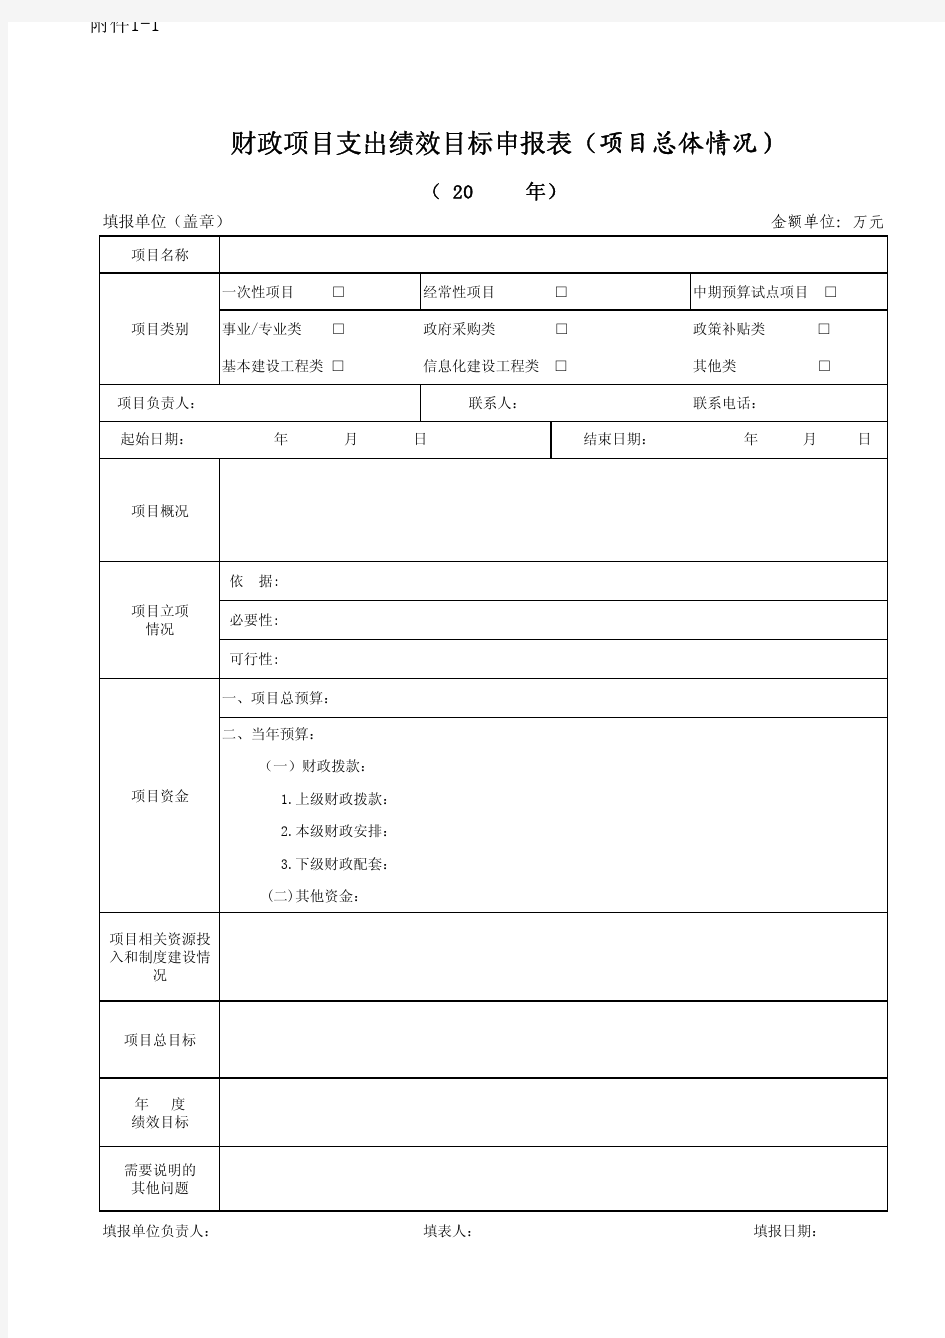 财政项目支出绩效目标申报表(项目总体情况)-上海财政